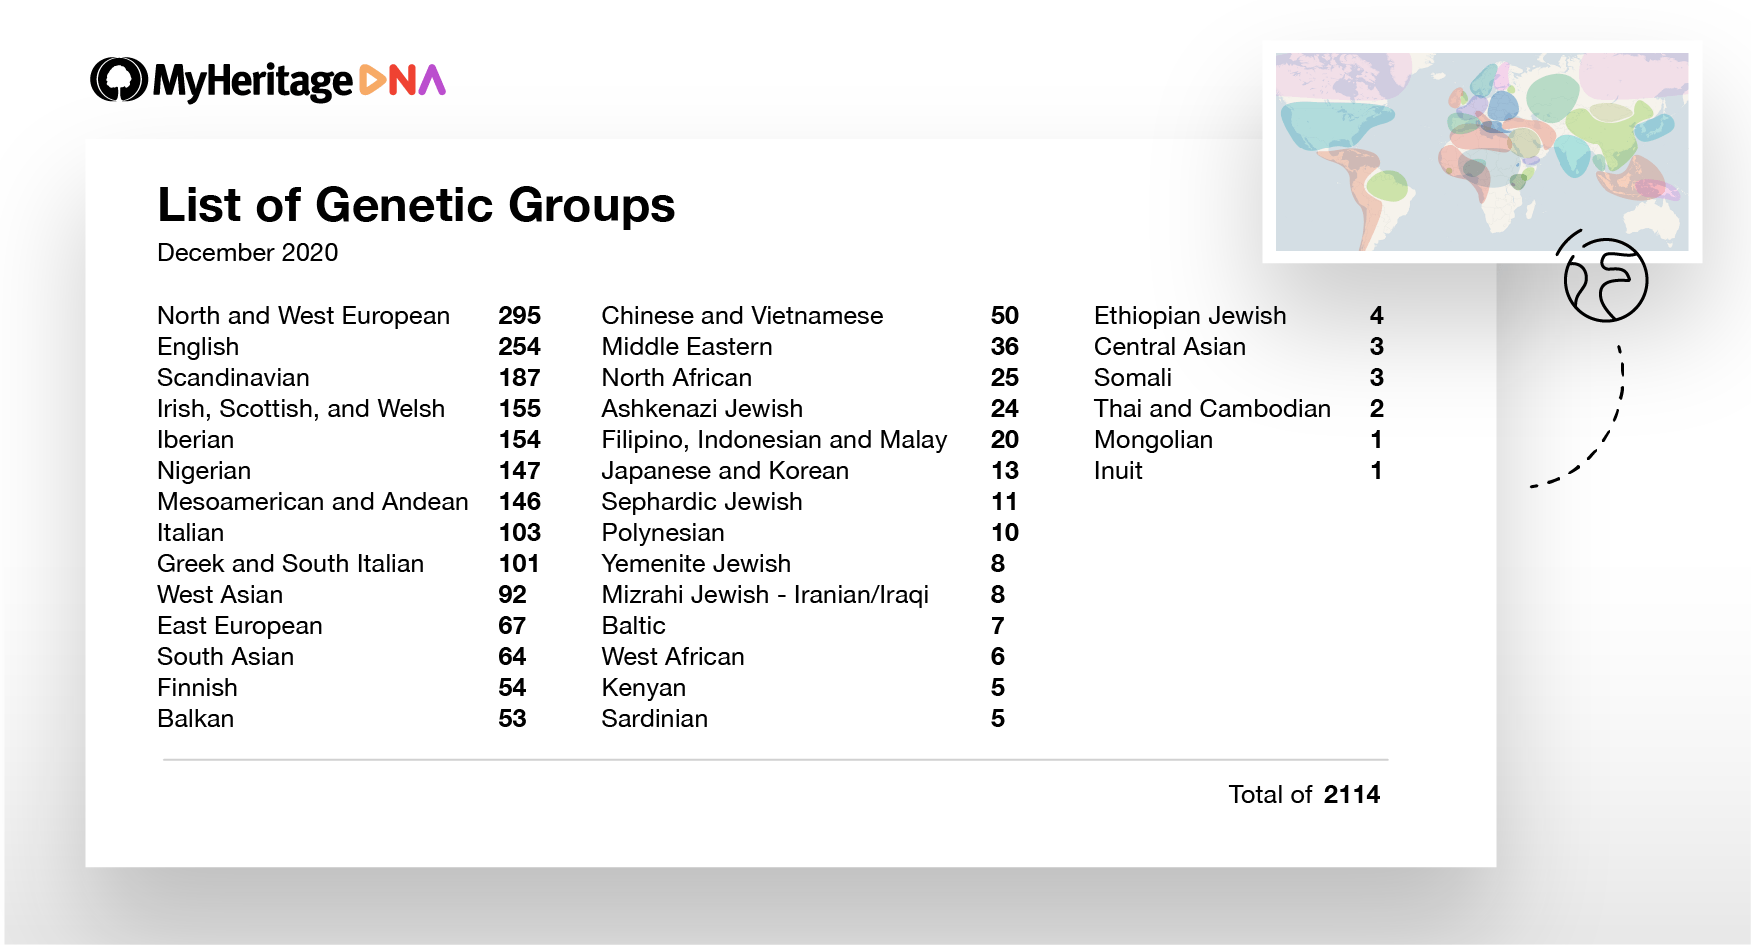 Liste over antallet af Genetiske Grupper, som er tilgængelige i dag, under deres vigtigste etniciteter. For eksempel er der 187 Genetiske Grupper, der er skandinaviske, og 54 Genetiske Grupper, der er finske (Klik for at zoome)